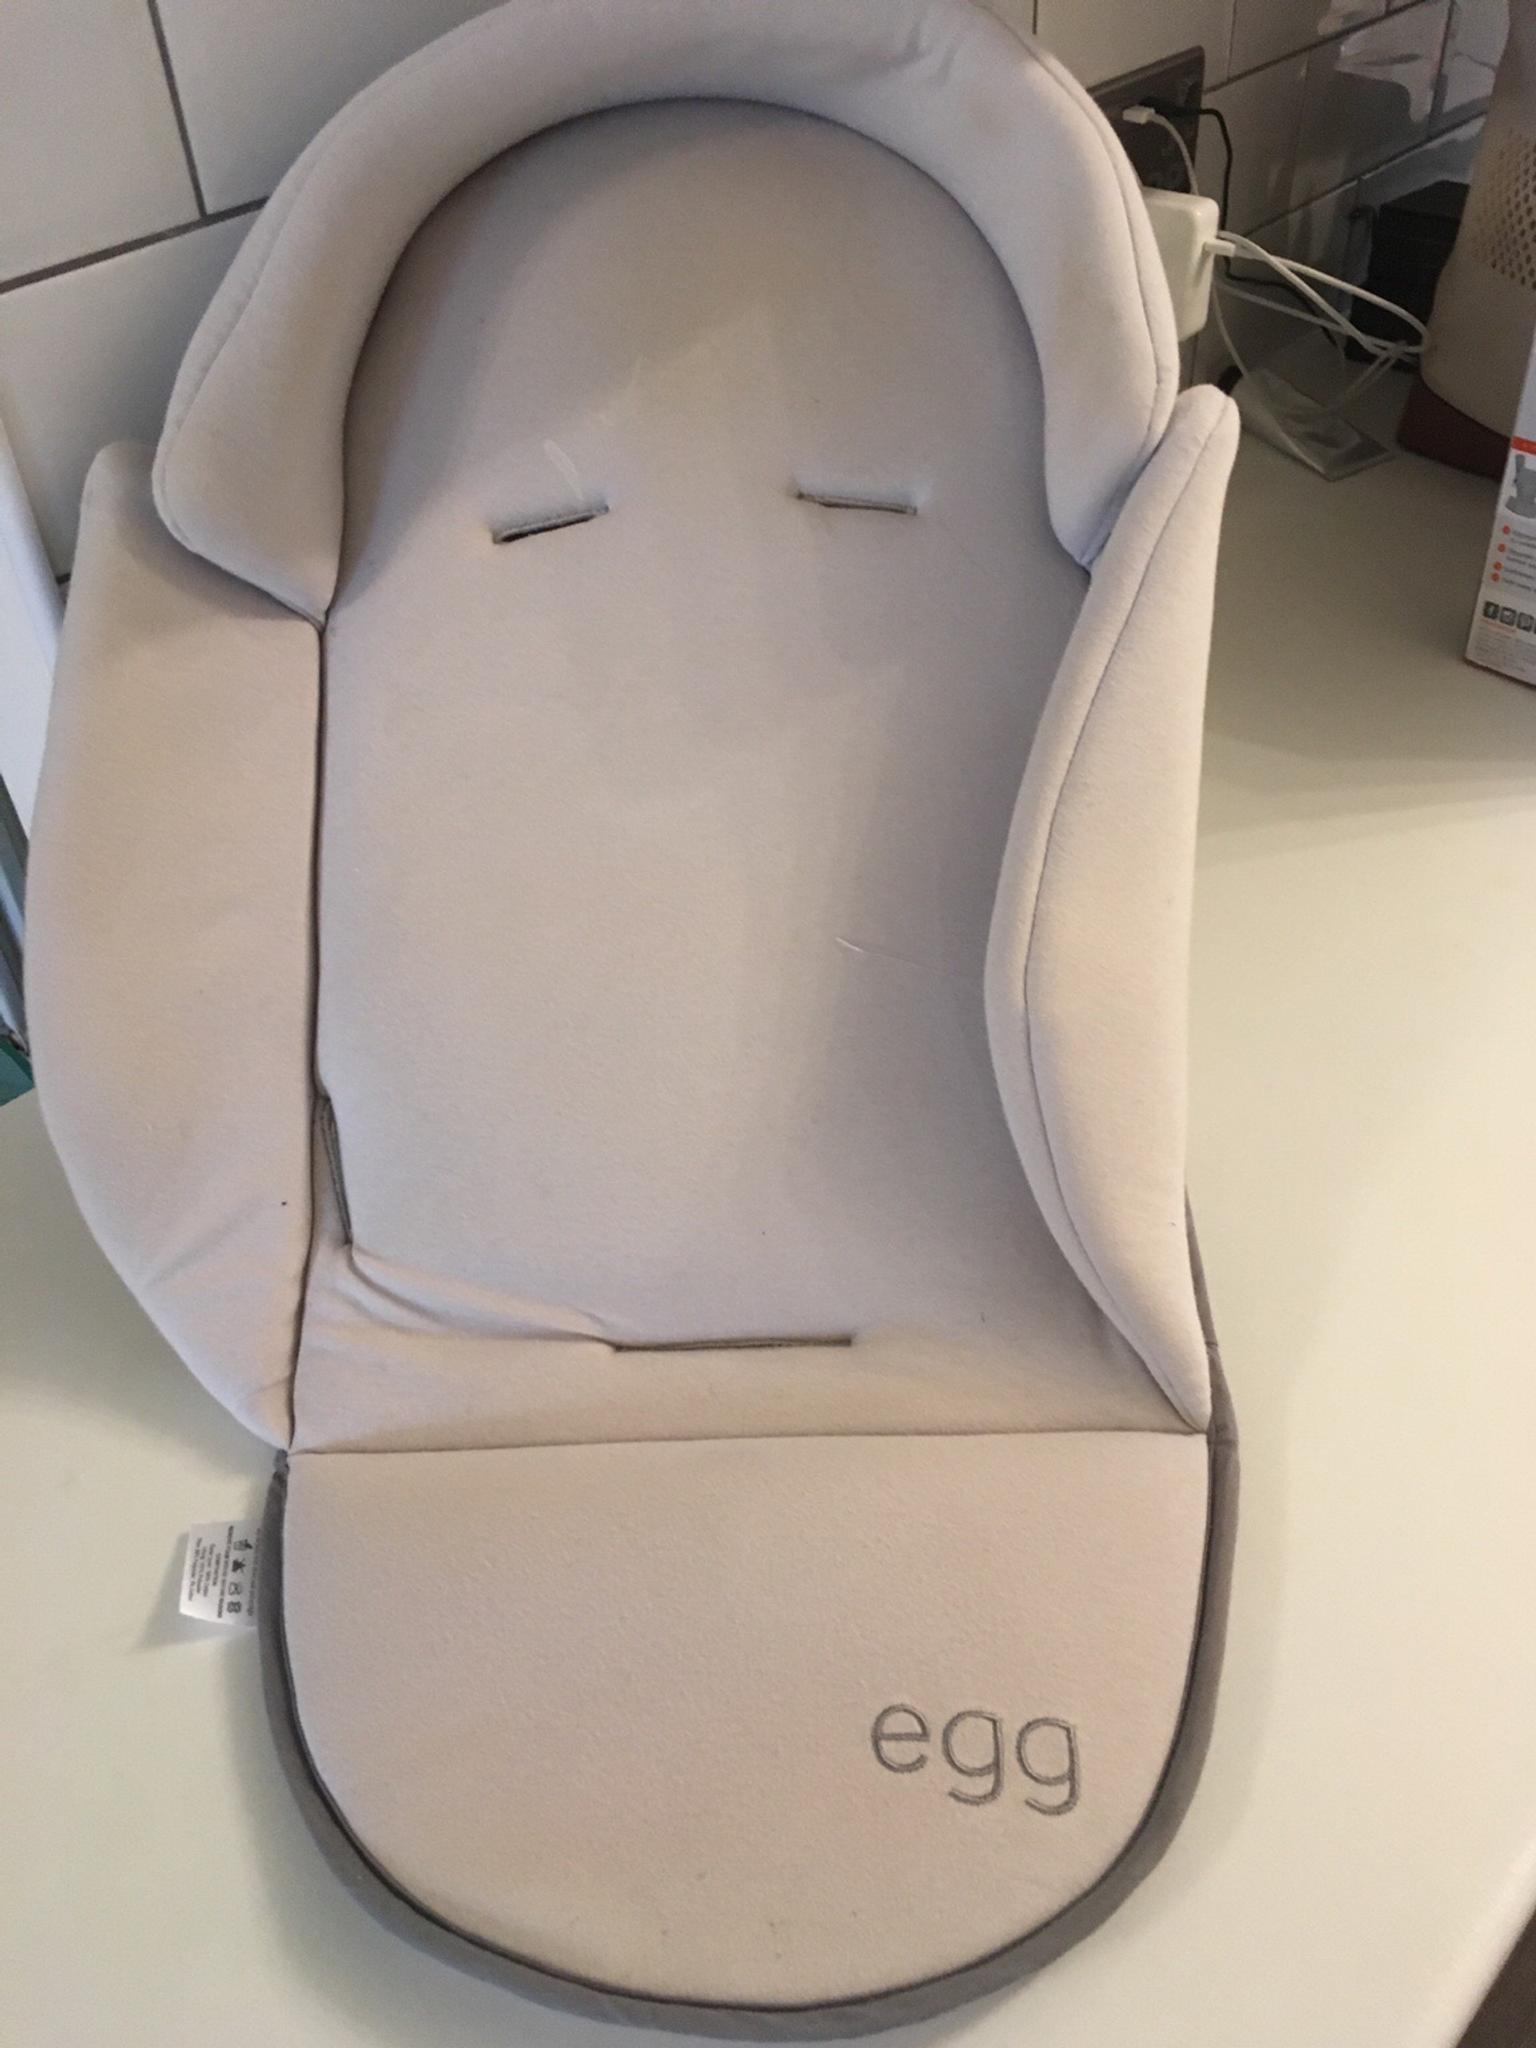 newborn insert egg stroller